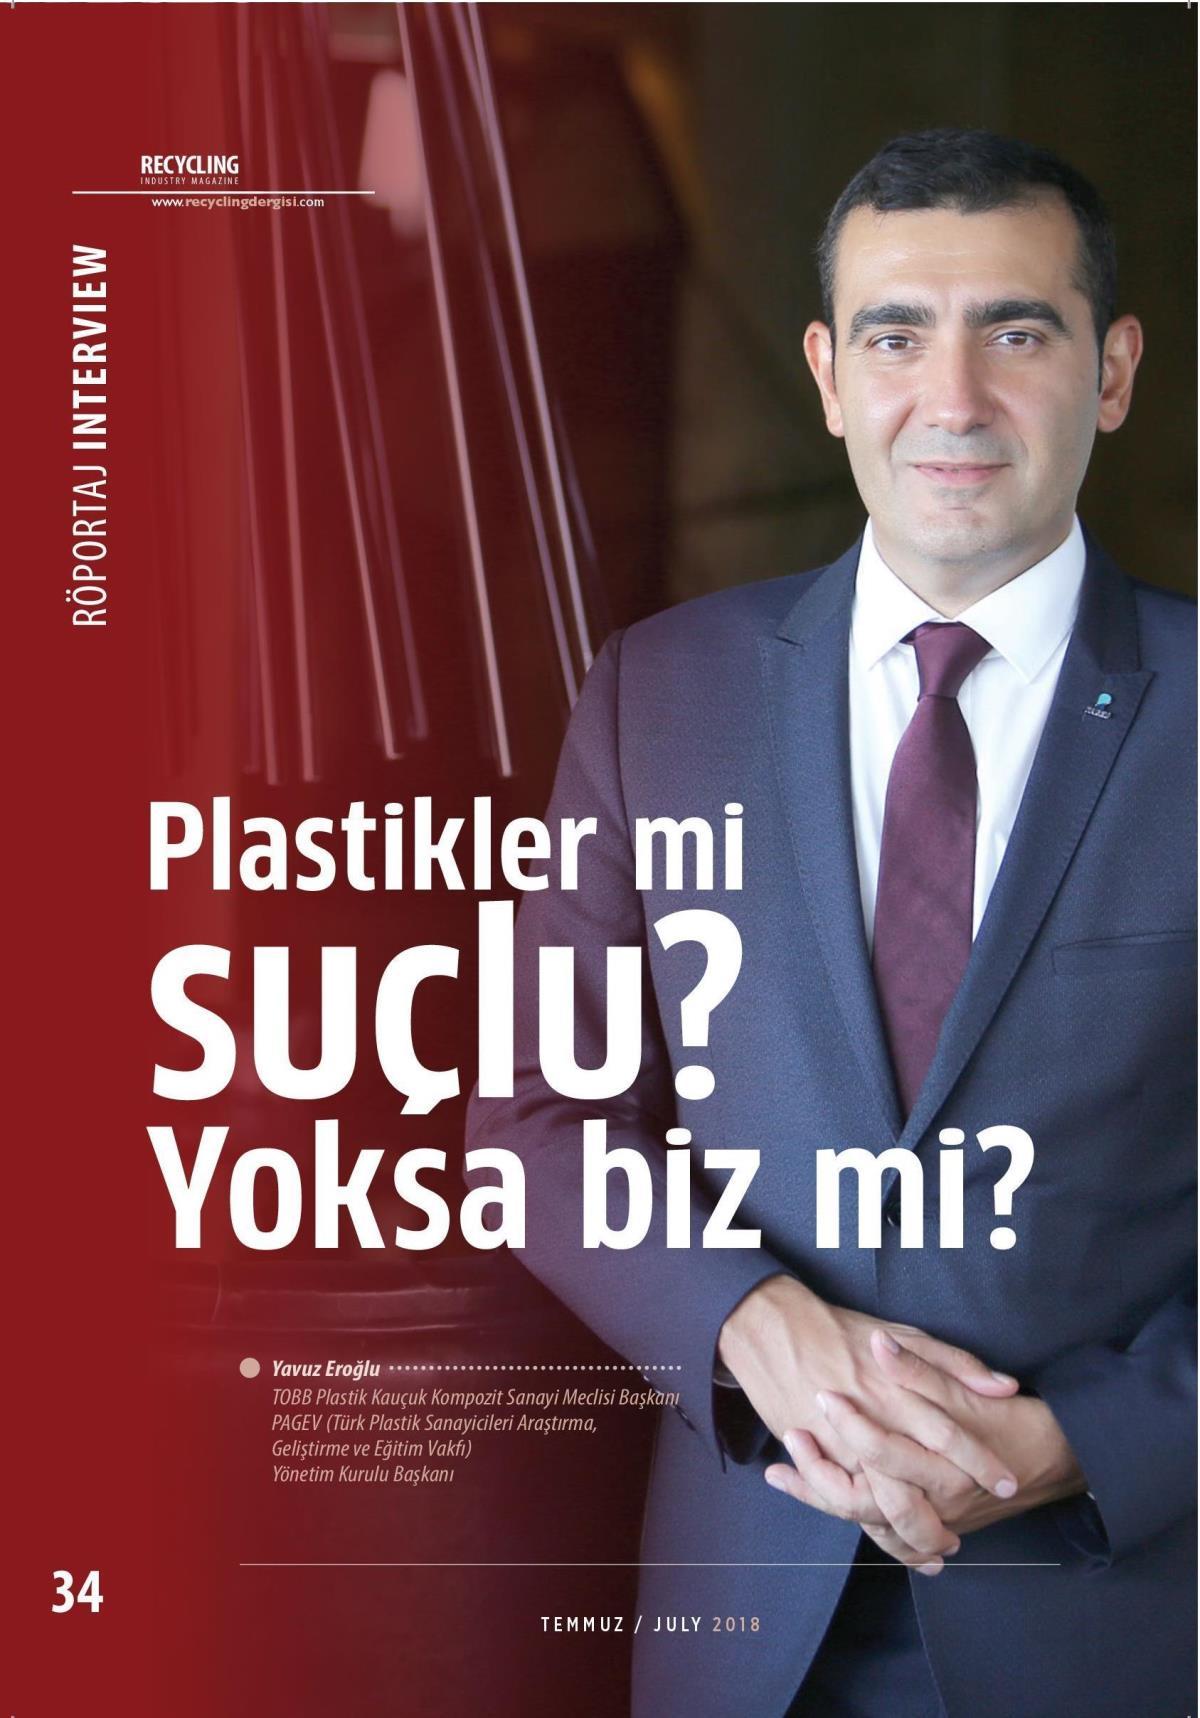 Yönetim Kurulu Başkanımız ve Genel Müdürümüz Yavuz Eroğlu’nun Recycling Industry dergisinin 130. sayısında plastik ile ilgili görüşlerini paylaştığı röportajı;